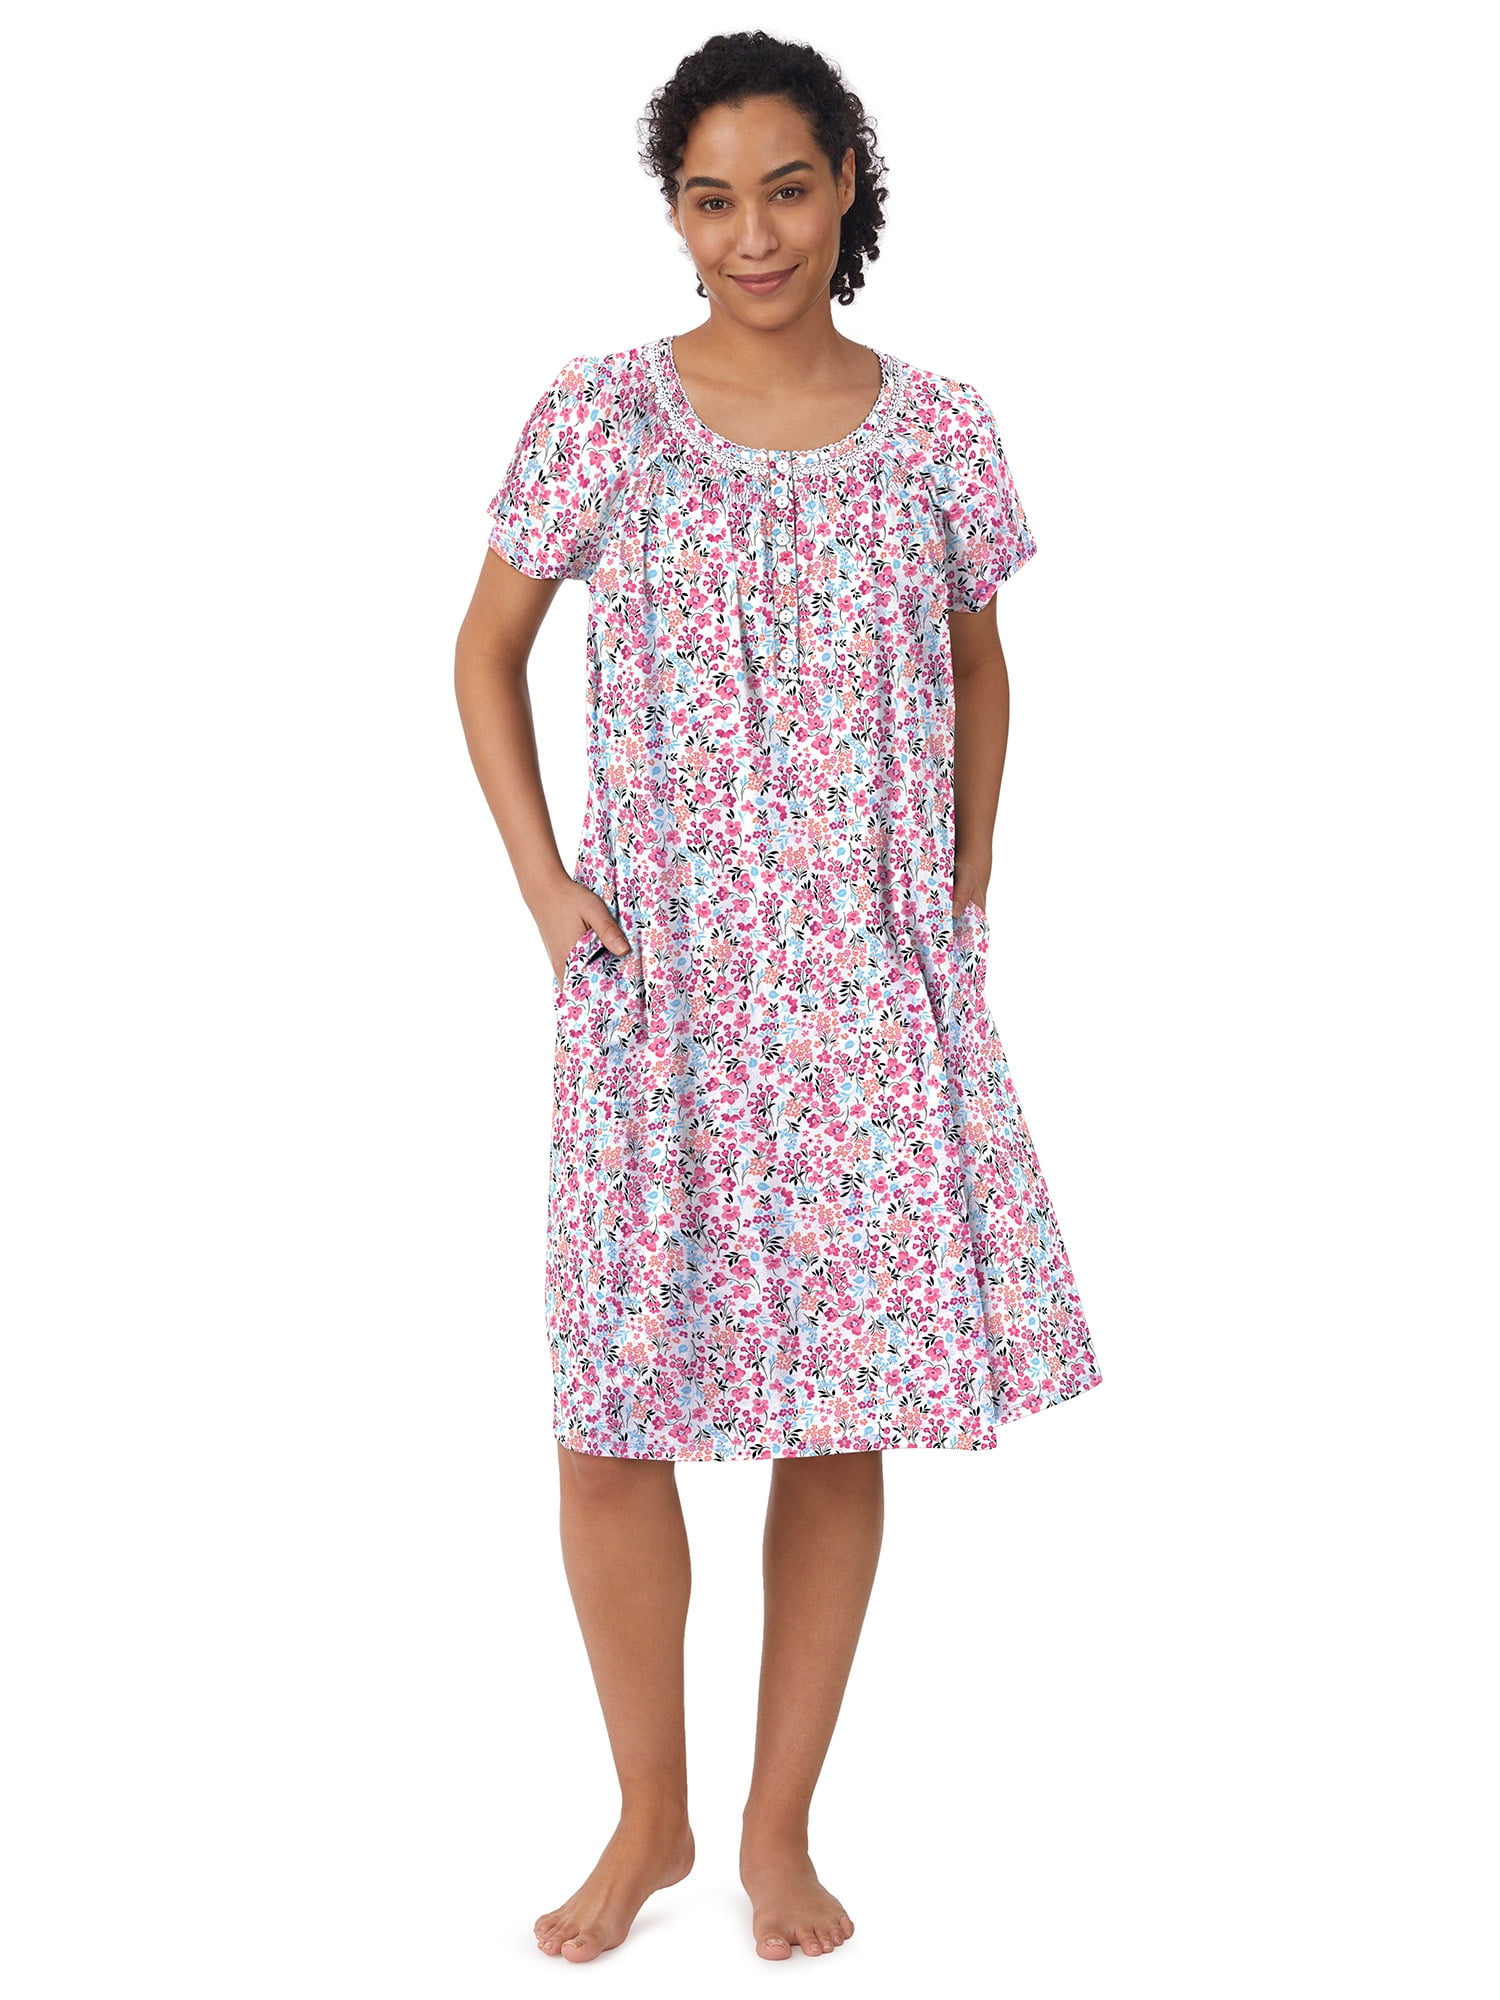 Aria Women's and Women's Plus Sleeveless Cotton Nightgown, Sizes S-4X 